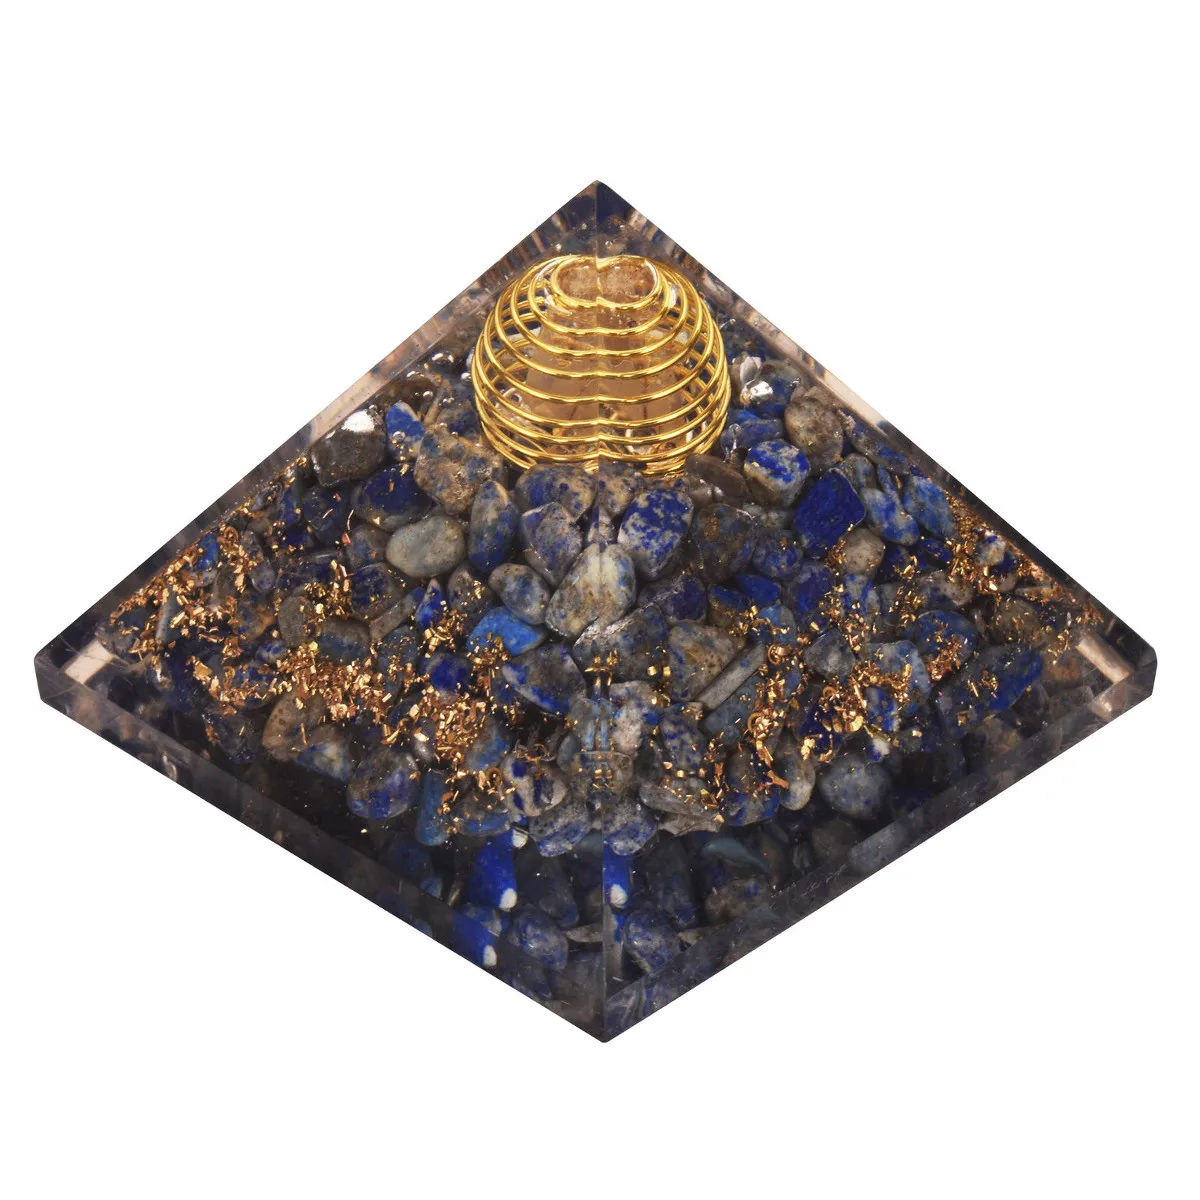 65-75 мм камень фэн-шуй, натуральная пирамида из кристалла кварца, драгоценный камень для йоги, энергетический лечебный камень, украшение для дома и сада, новинка - Color: 4